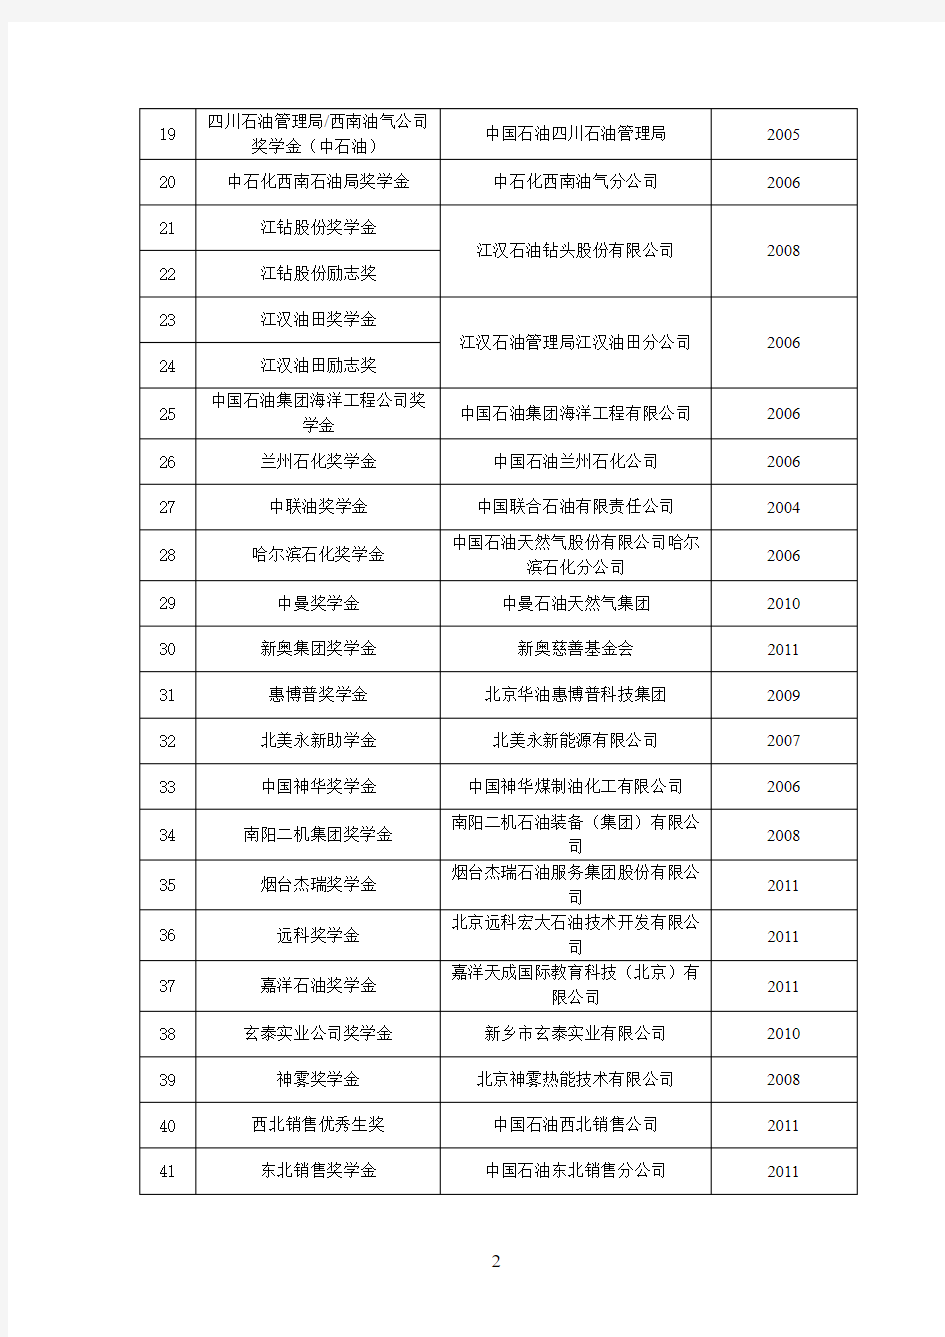 中国石油大学(北京)企业奖助学金设置情况一览表